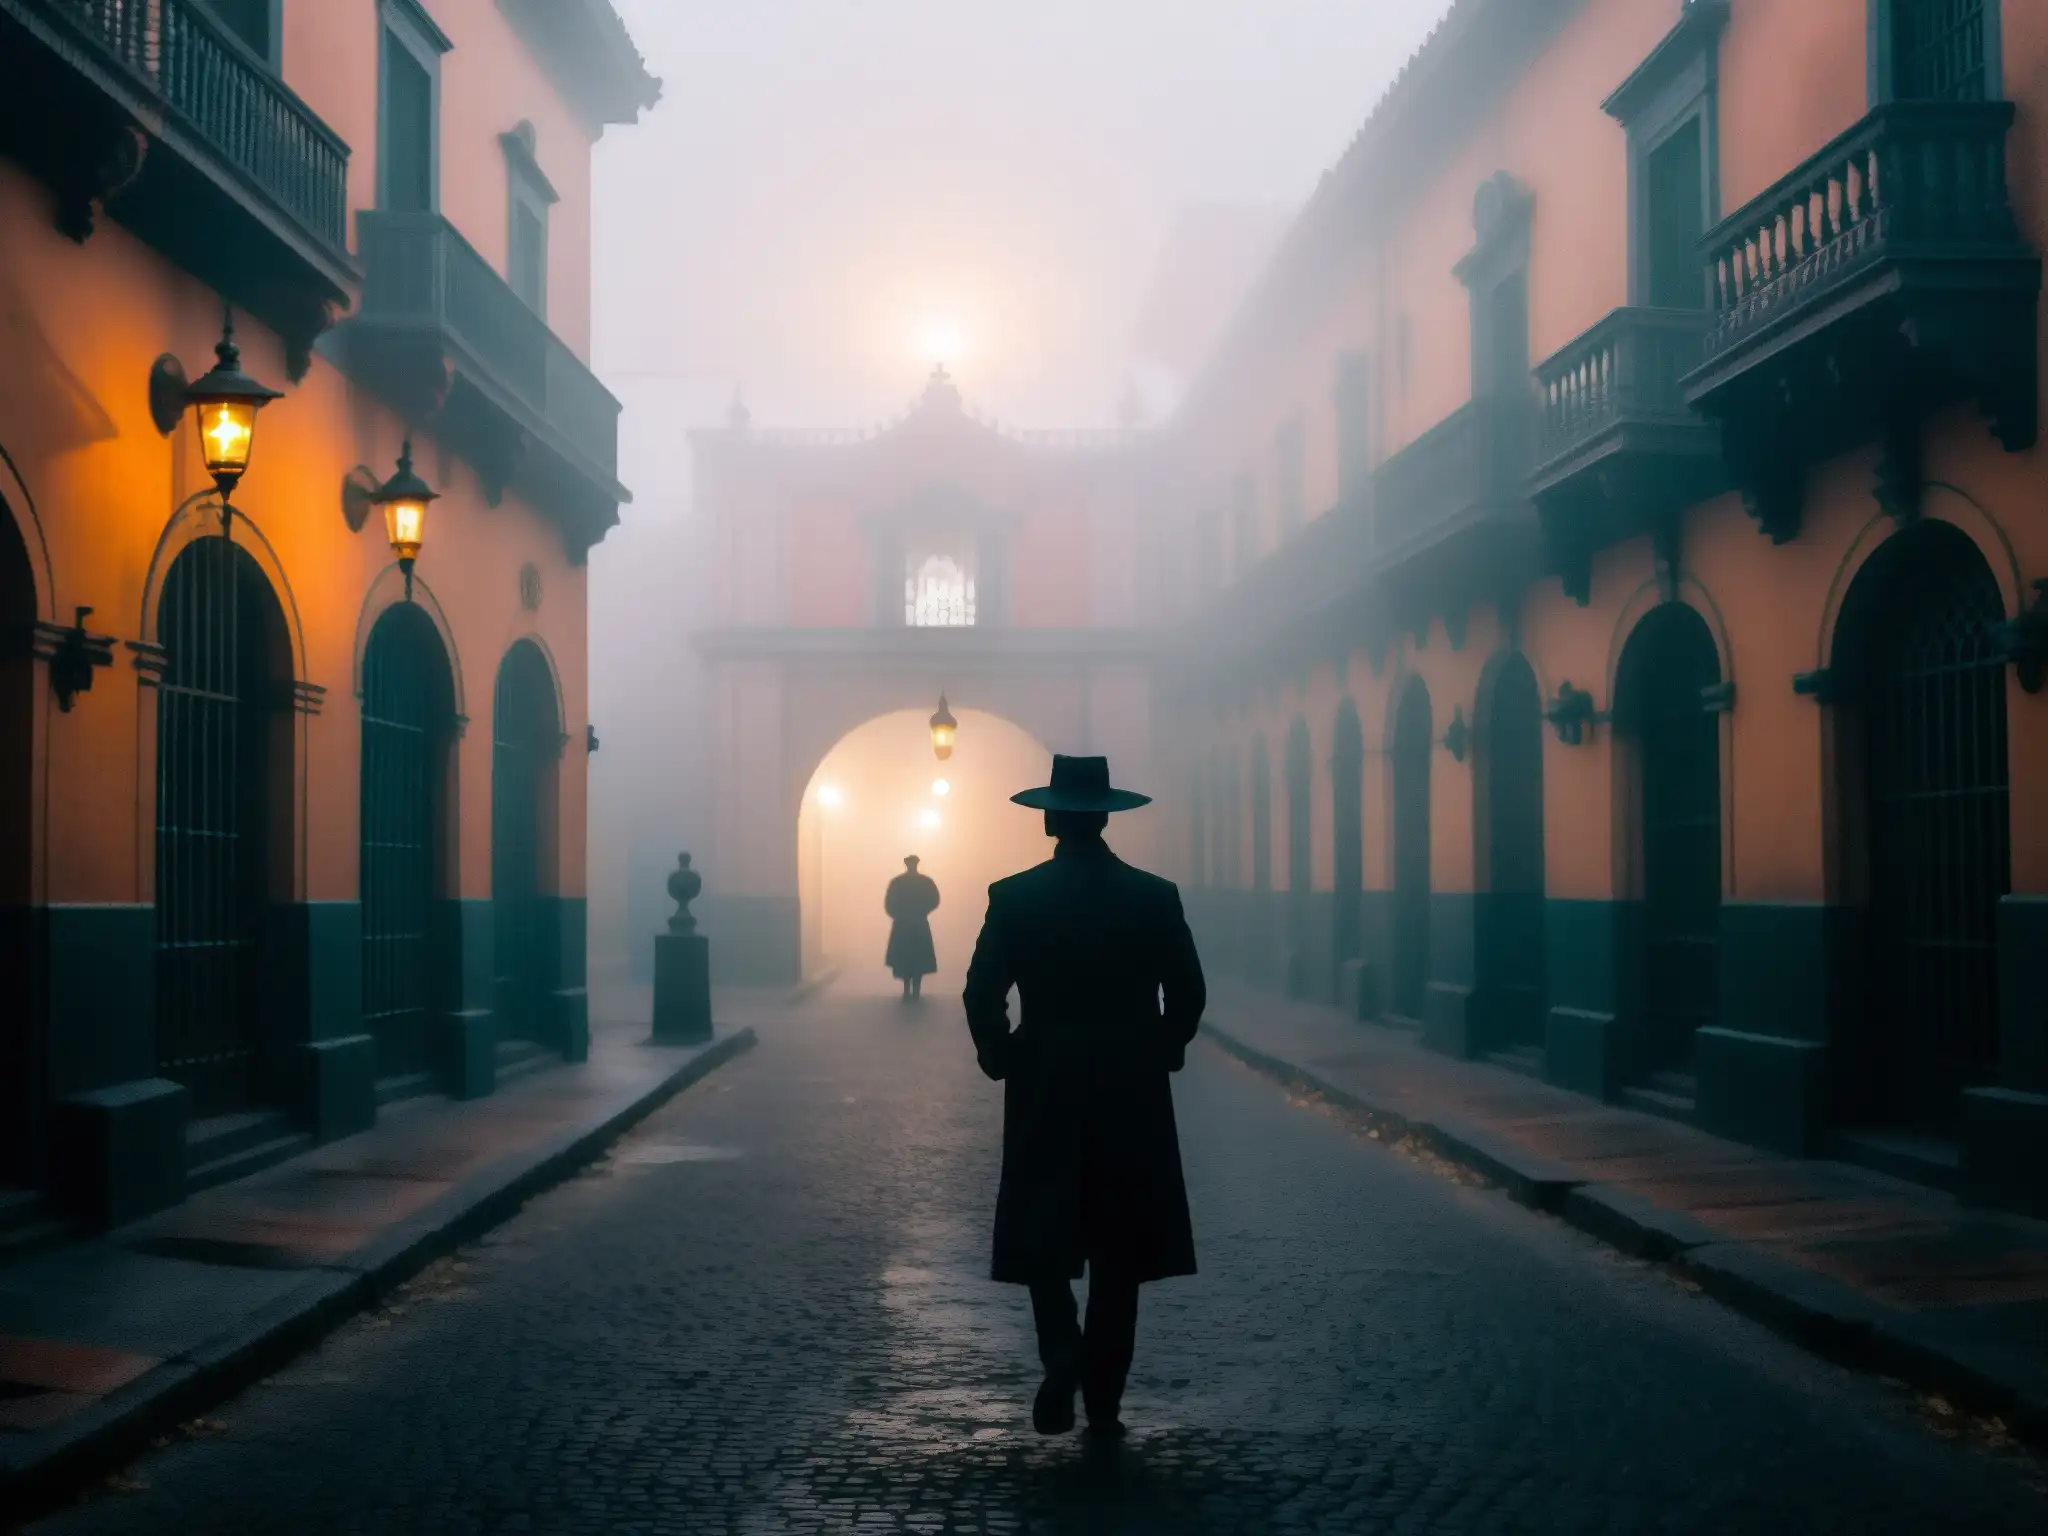 Enigmático callejón de Ciudad de México, figura espectral entre la niebla, luces de farolas y mansión antigua